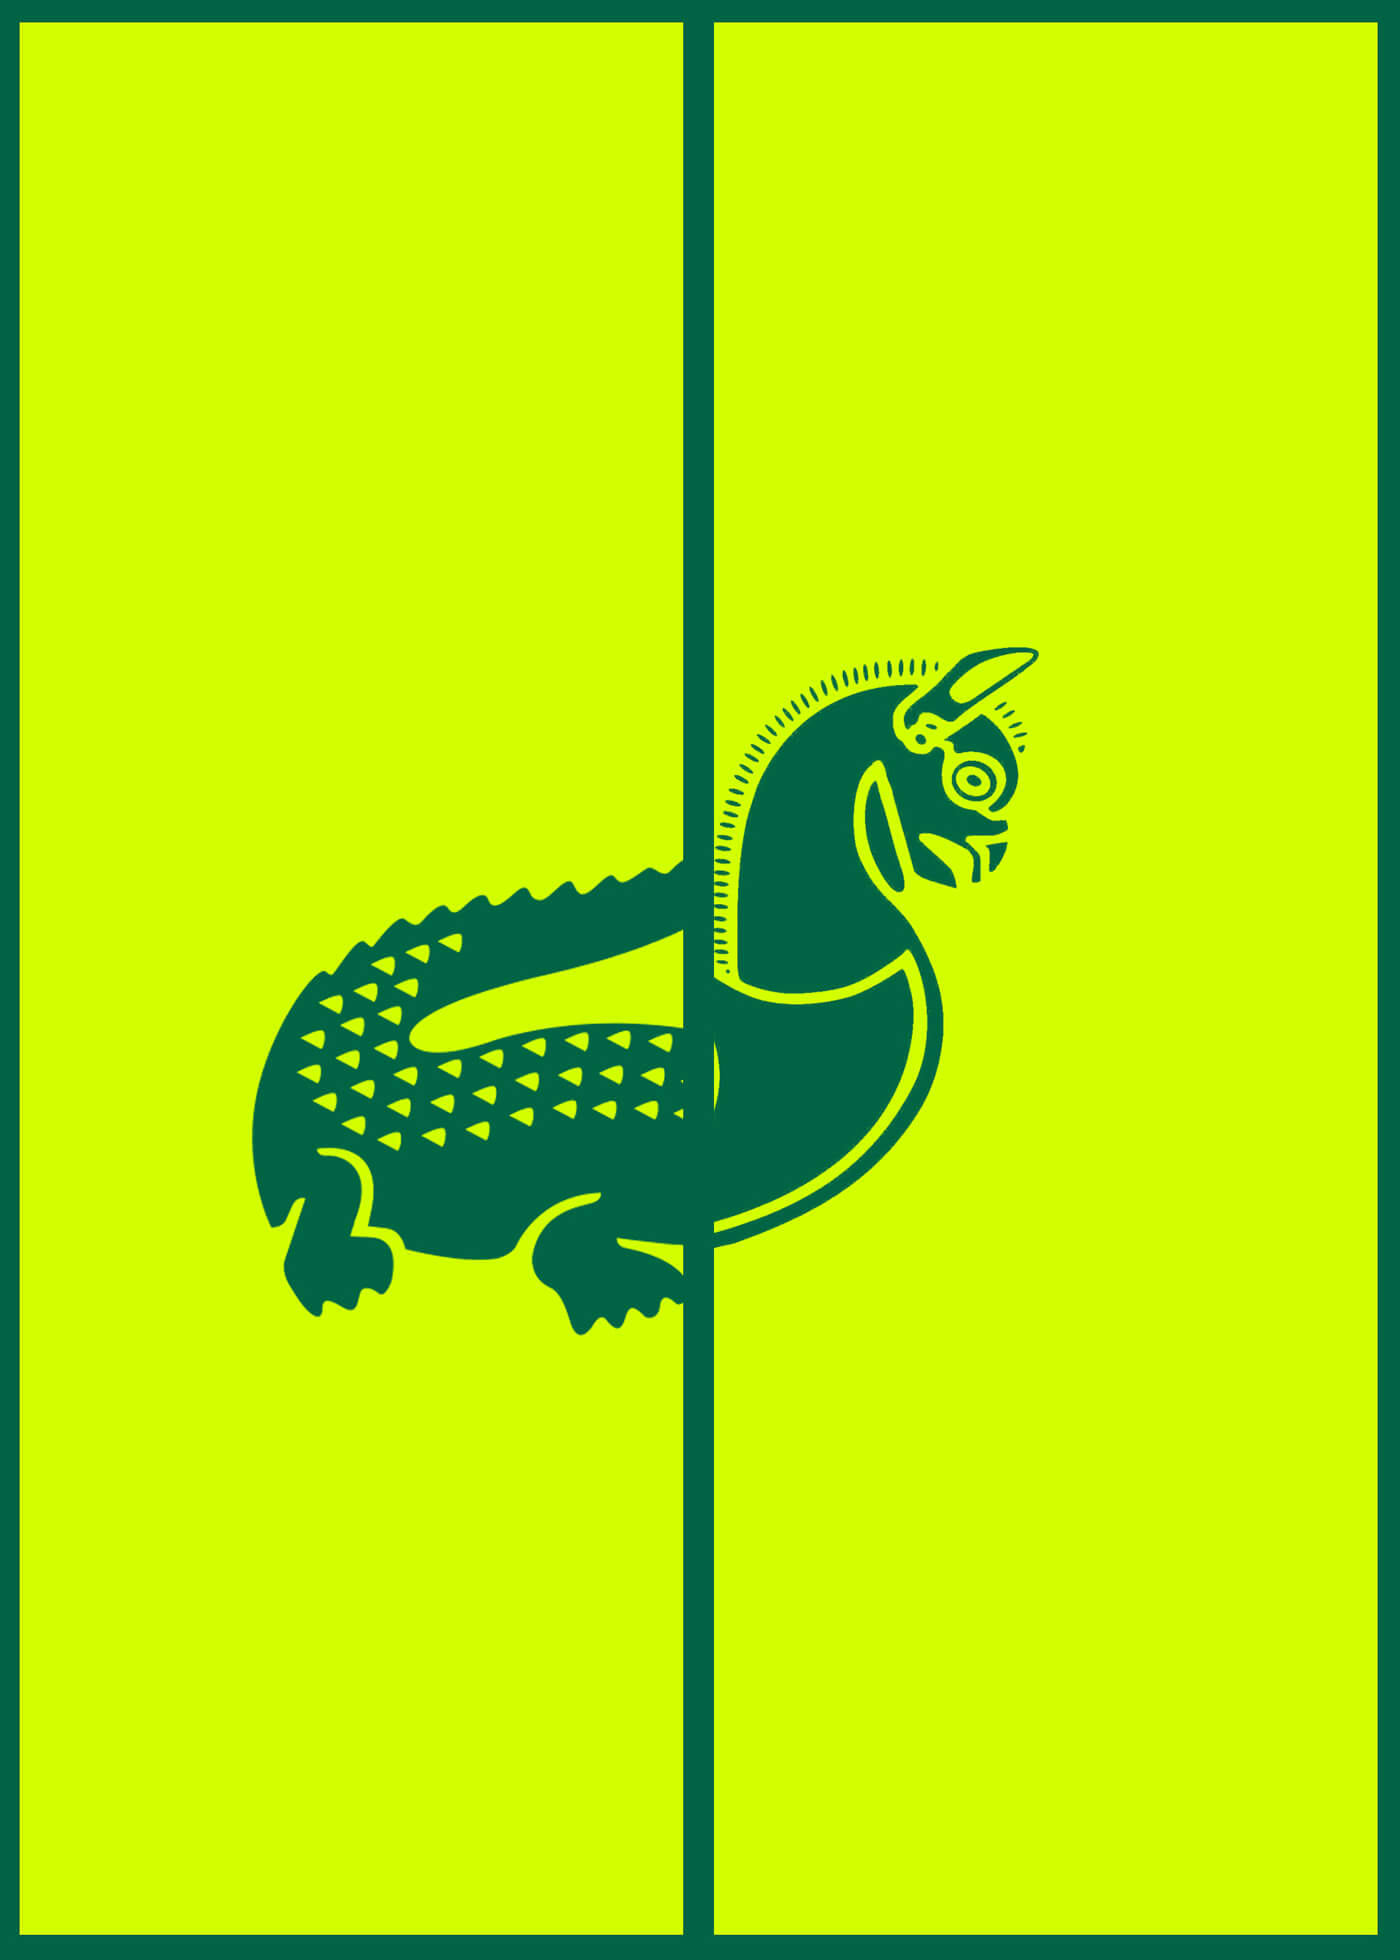 8 Lacoste + Iran Air-Logo- Mashup